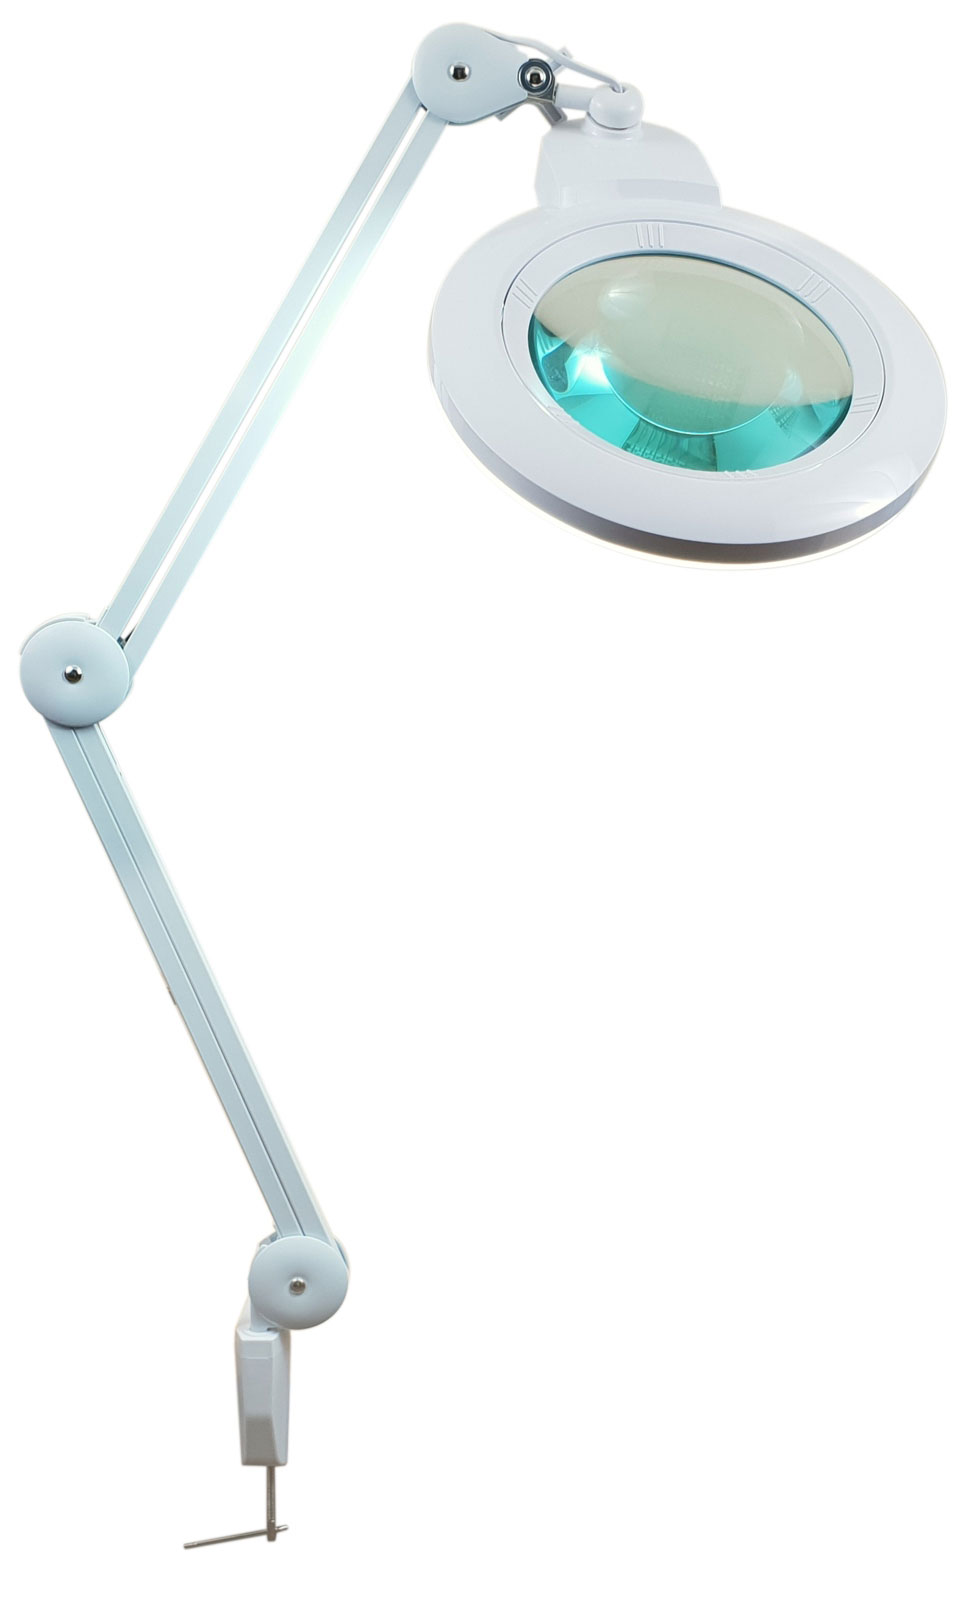 LAM-050, lampa z lupą 5d, lampa 9006LED, lampa ze szkłem powiększającym, lupa z podświetleniem, lupa z oświetleniem, lampa z powiększeniem, Lampa x84 diod LED z lupą o powiększeniu 5D x2,25, LAM-023,